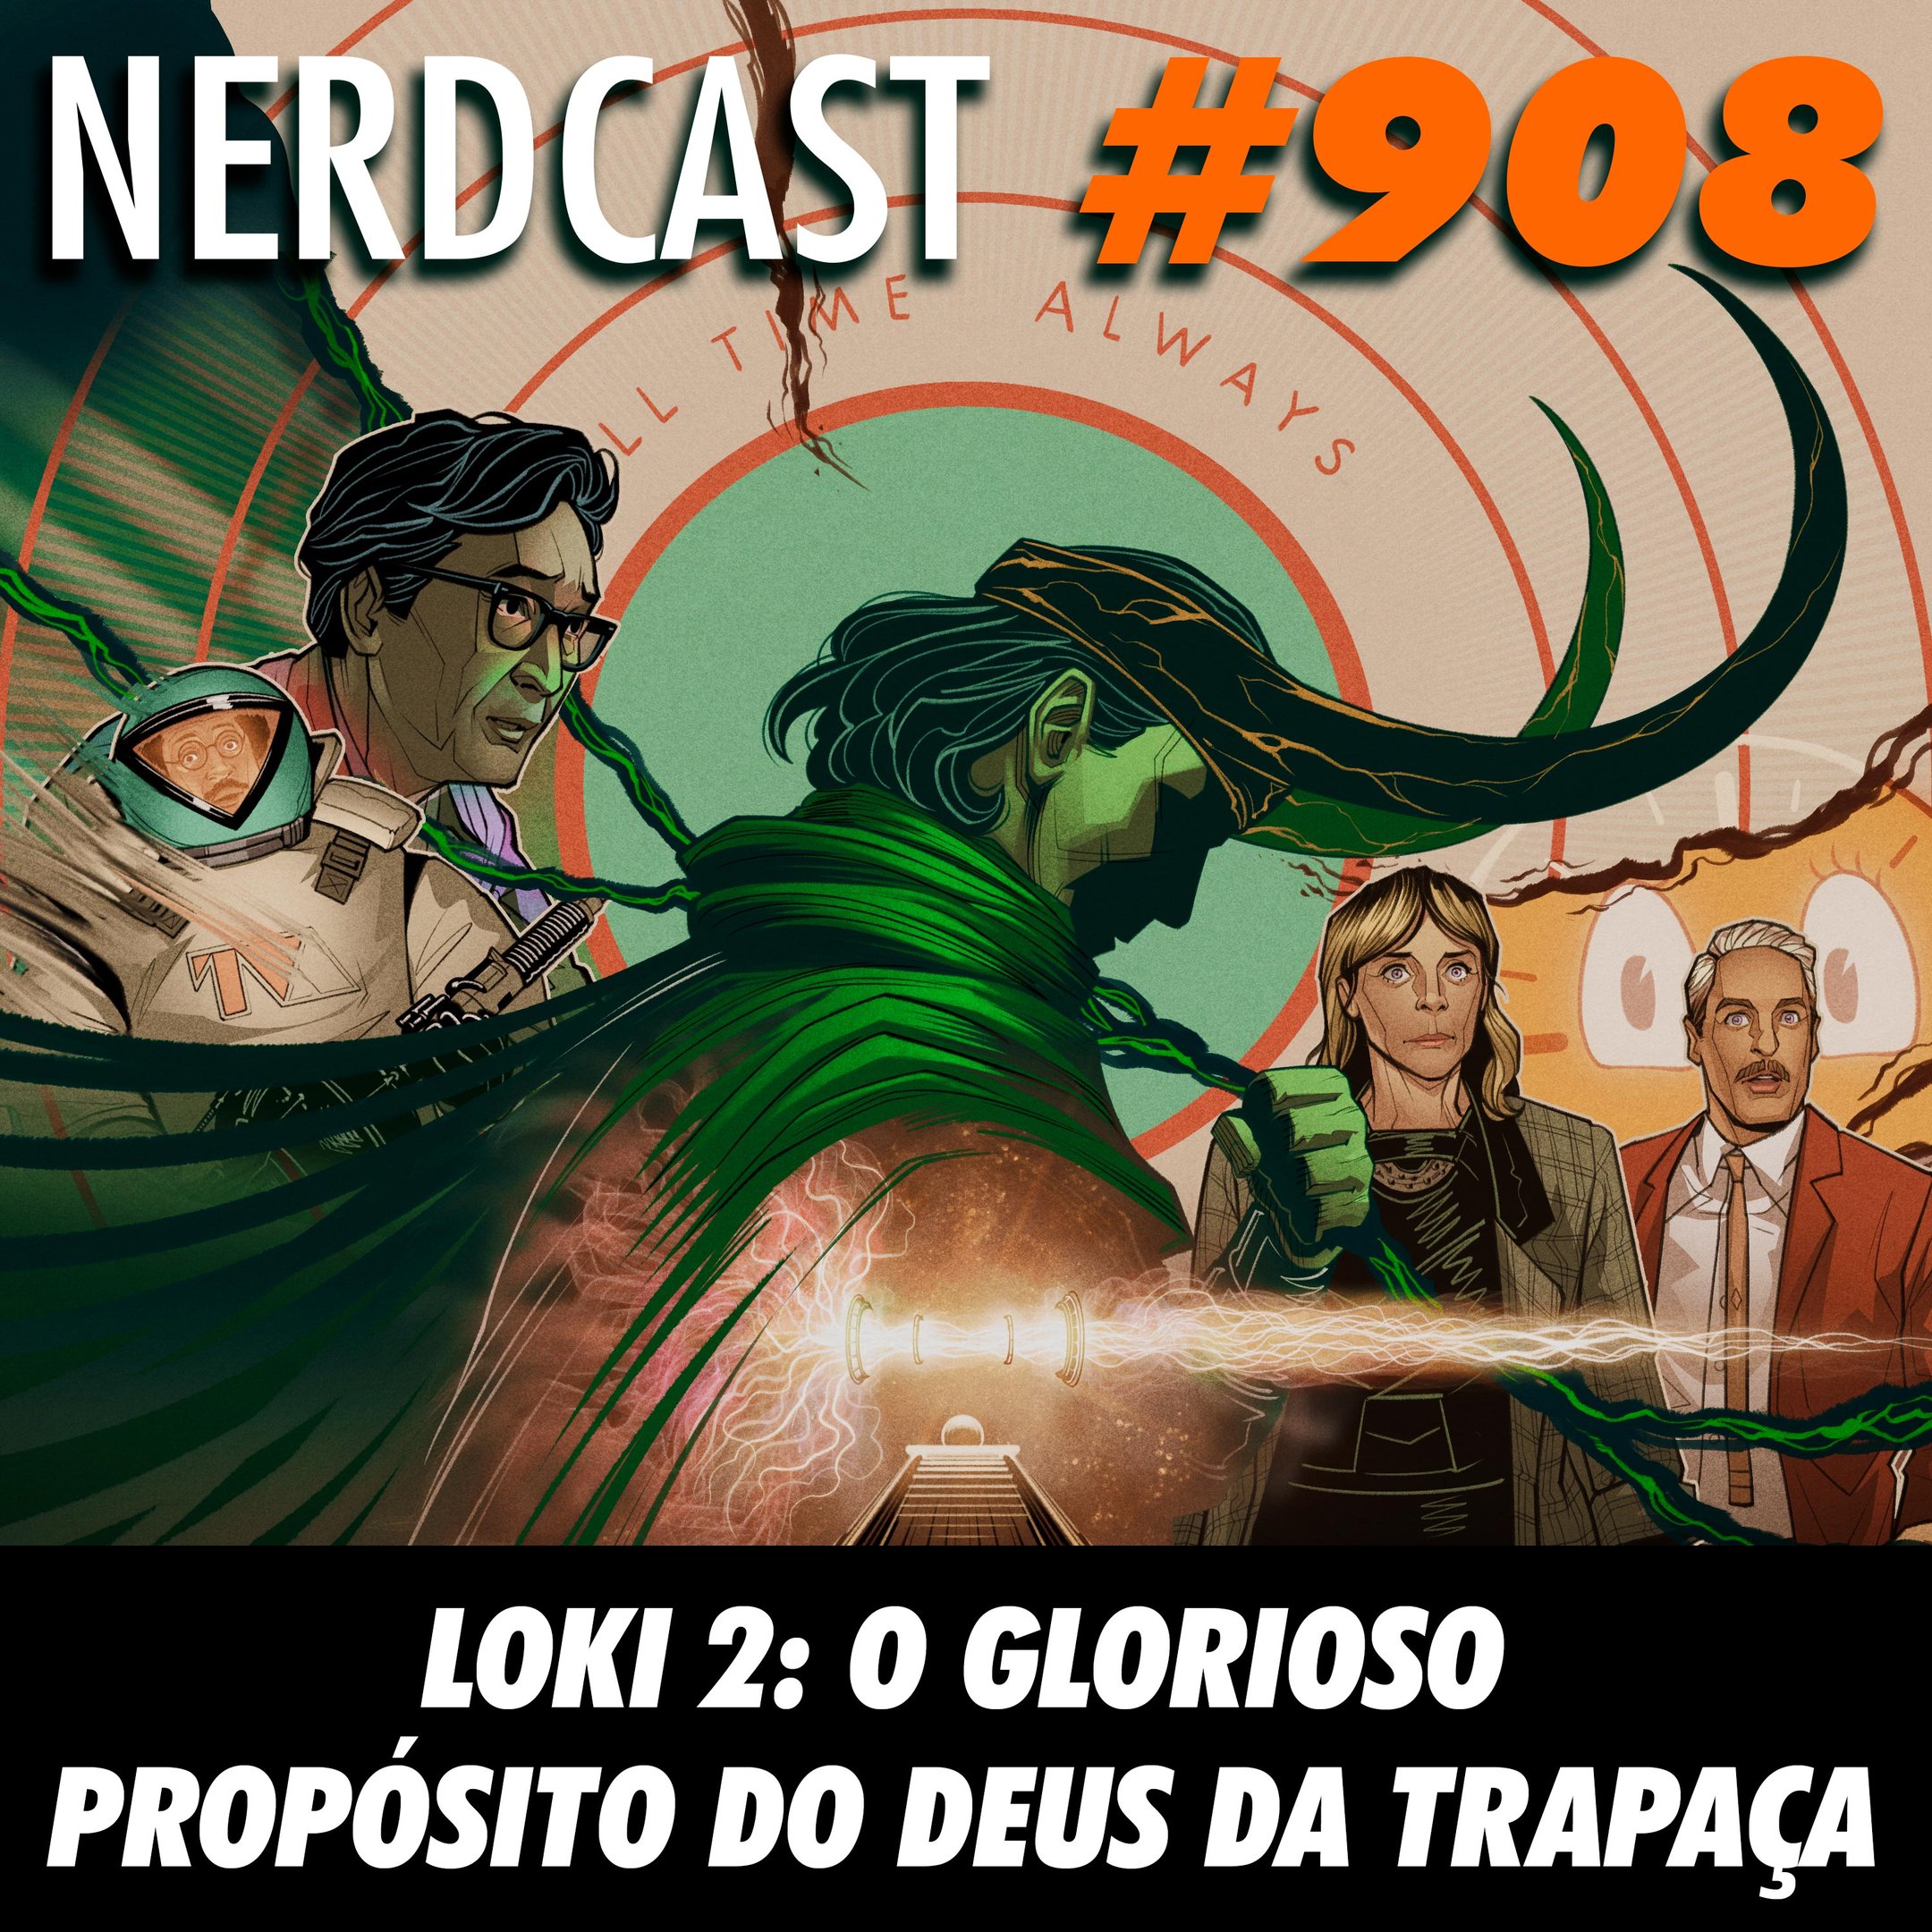 NerdCast 908 - Loki 2: O glorioso propósito do deus da trapaça